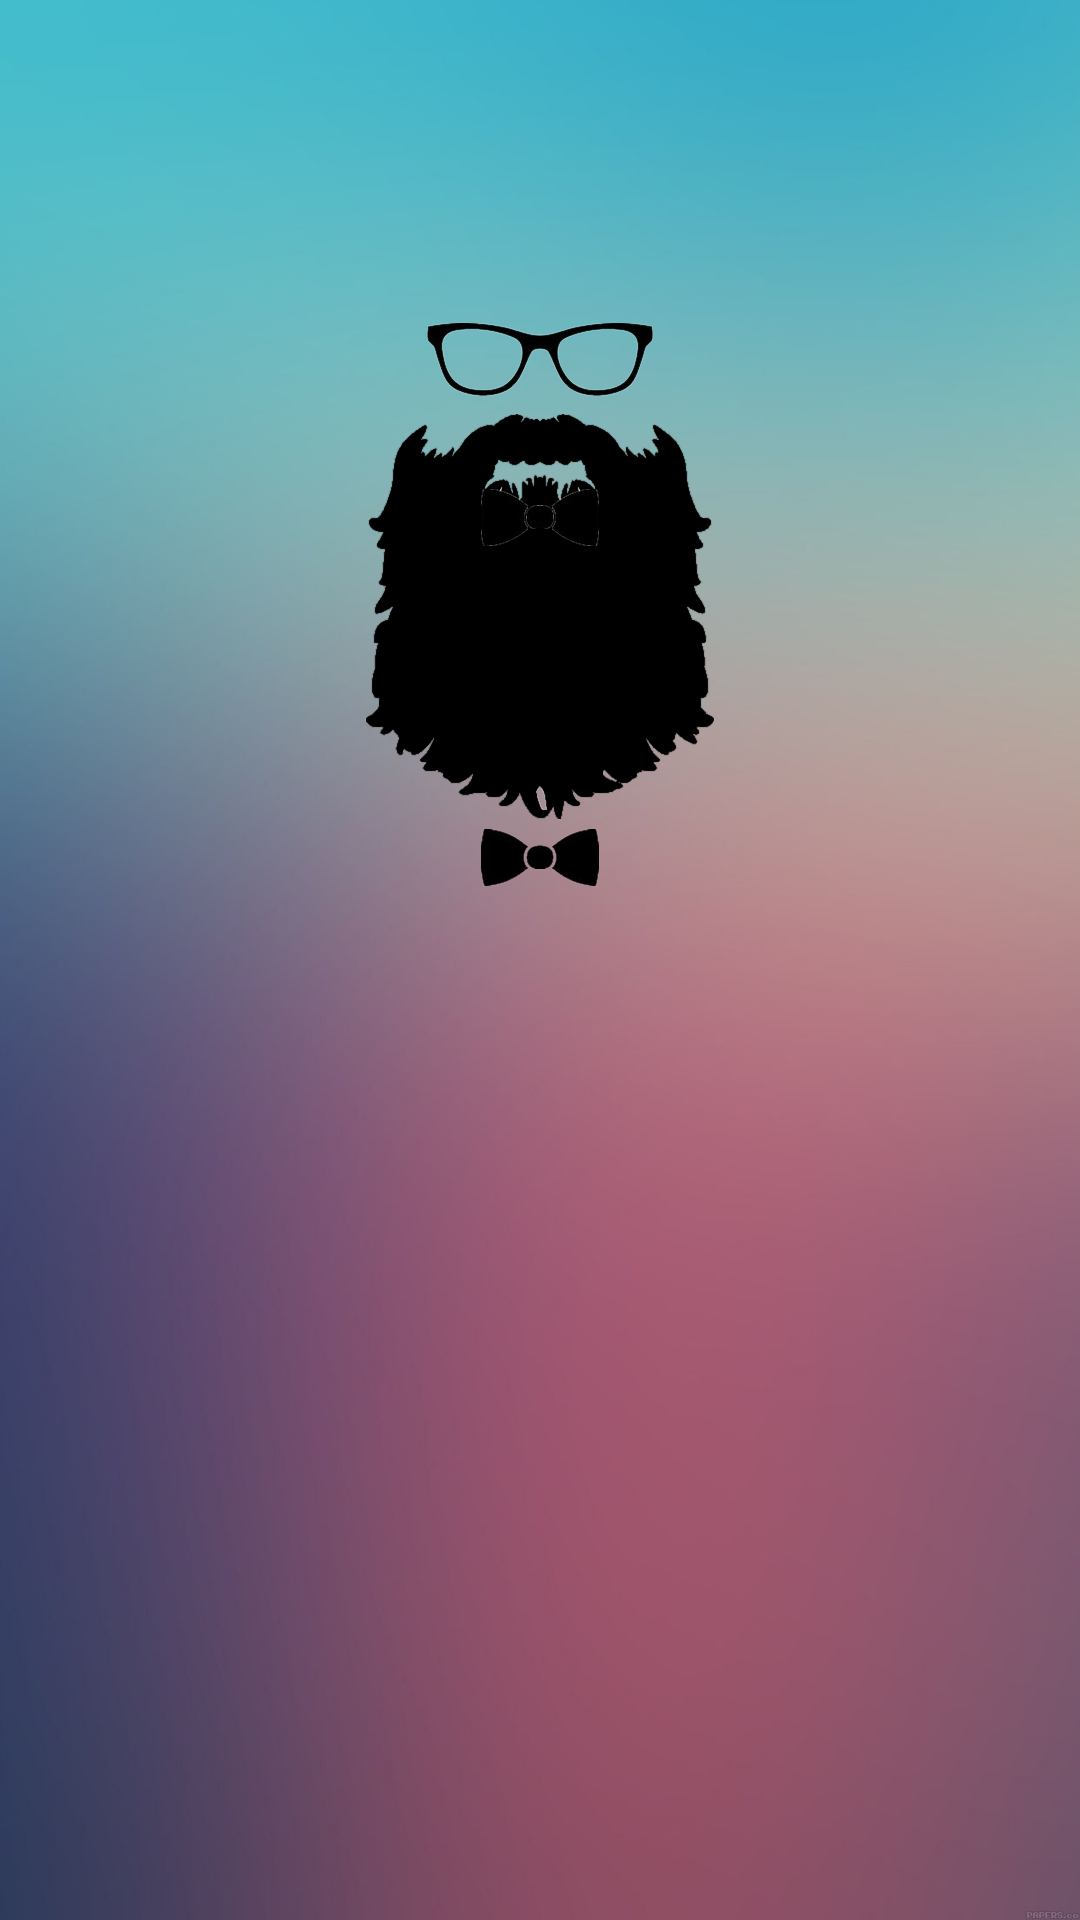 sfondi barba per iphone 6,capelli,cielo,barba,illustrazione,nube